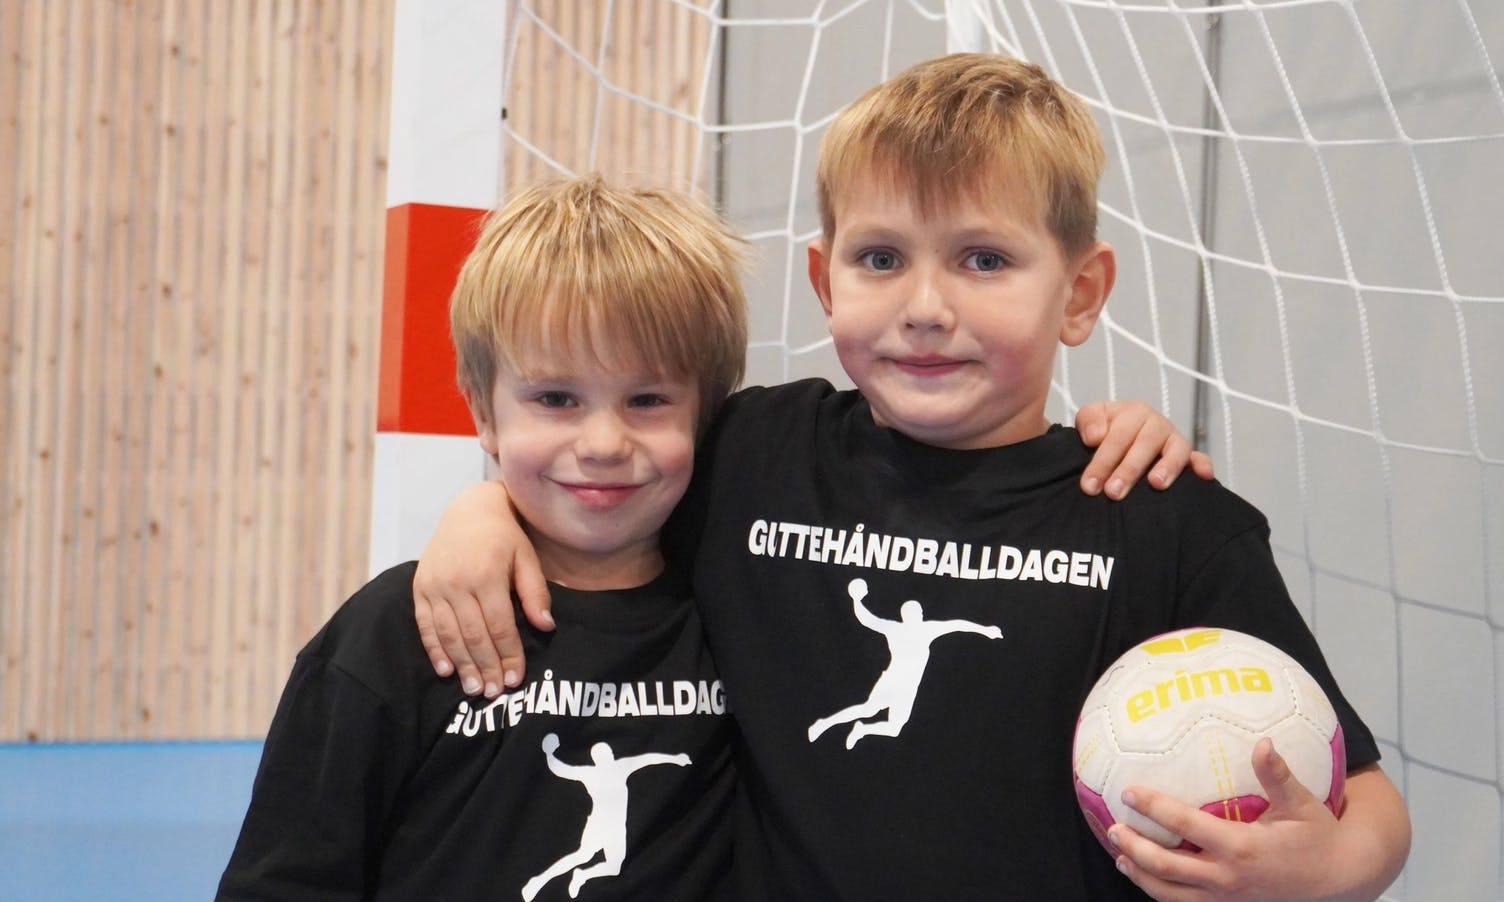 Sjå stor bildeserie: Guttehandballdag i Os idrettshall